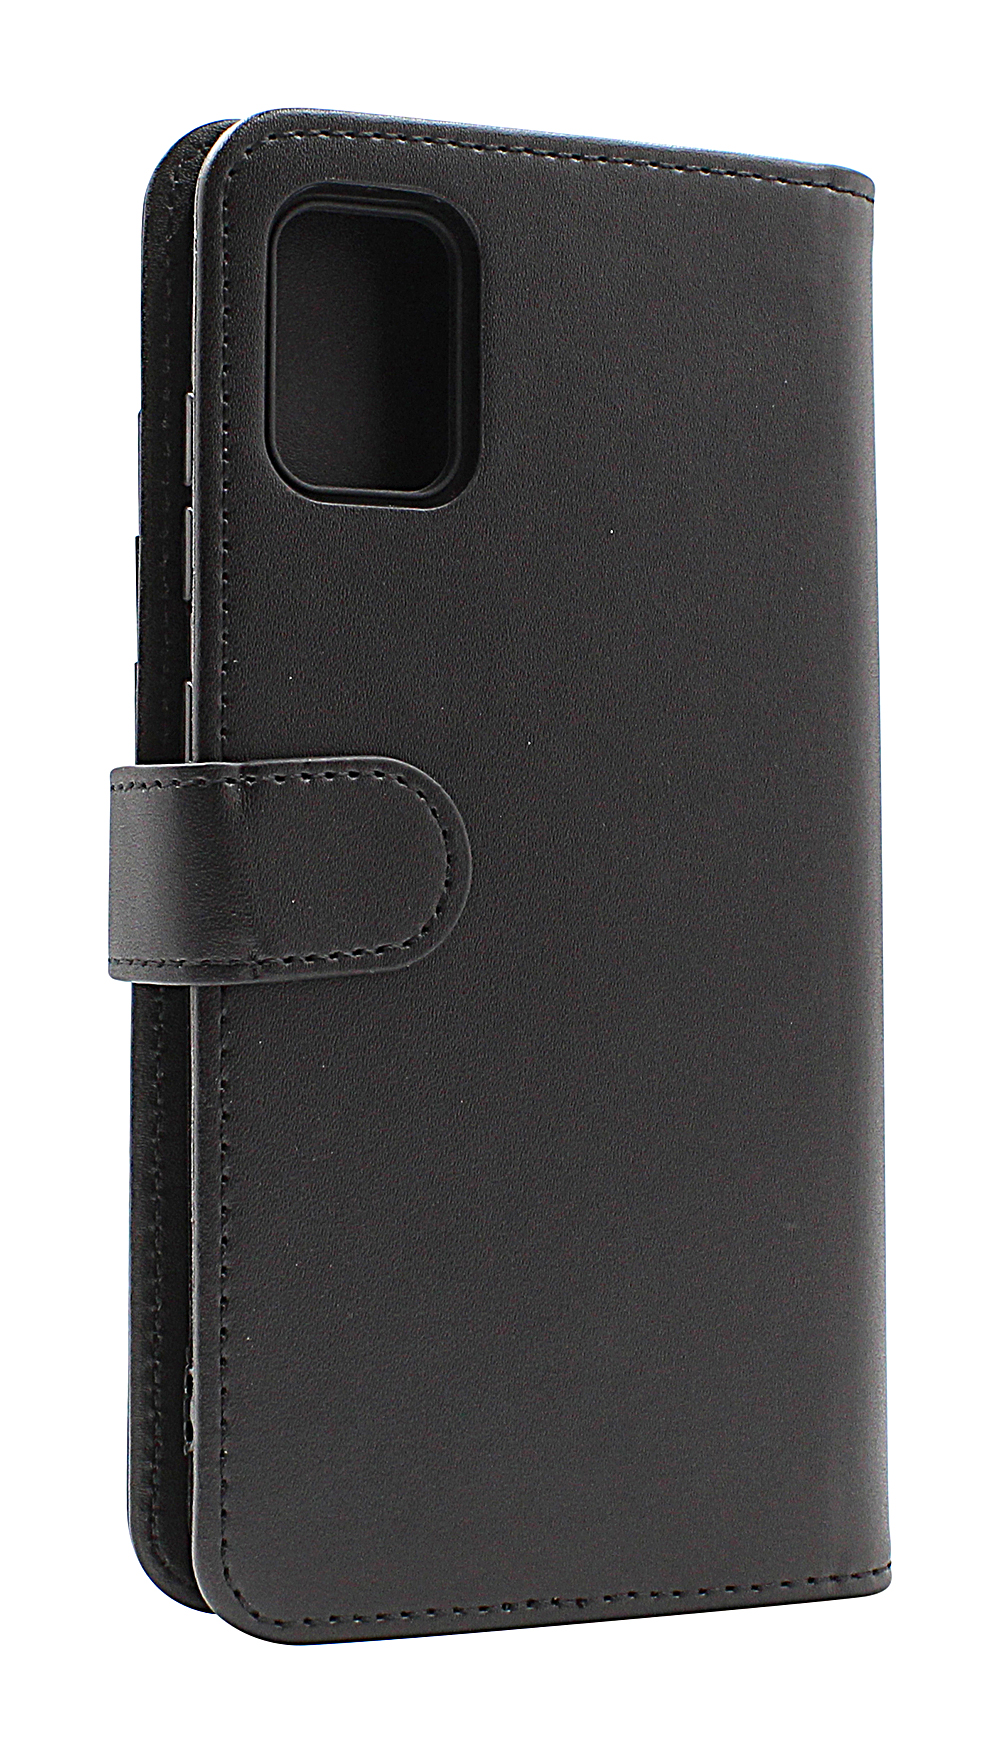 CoverInSkimblocker XL Wallet Samsung Galaxy A51 (A515F/DS)